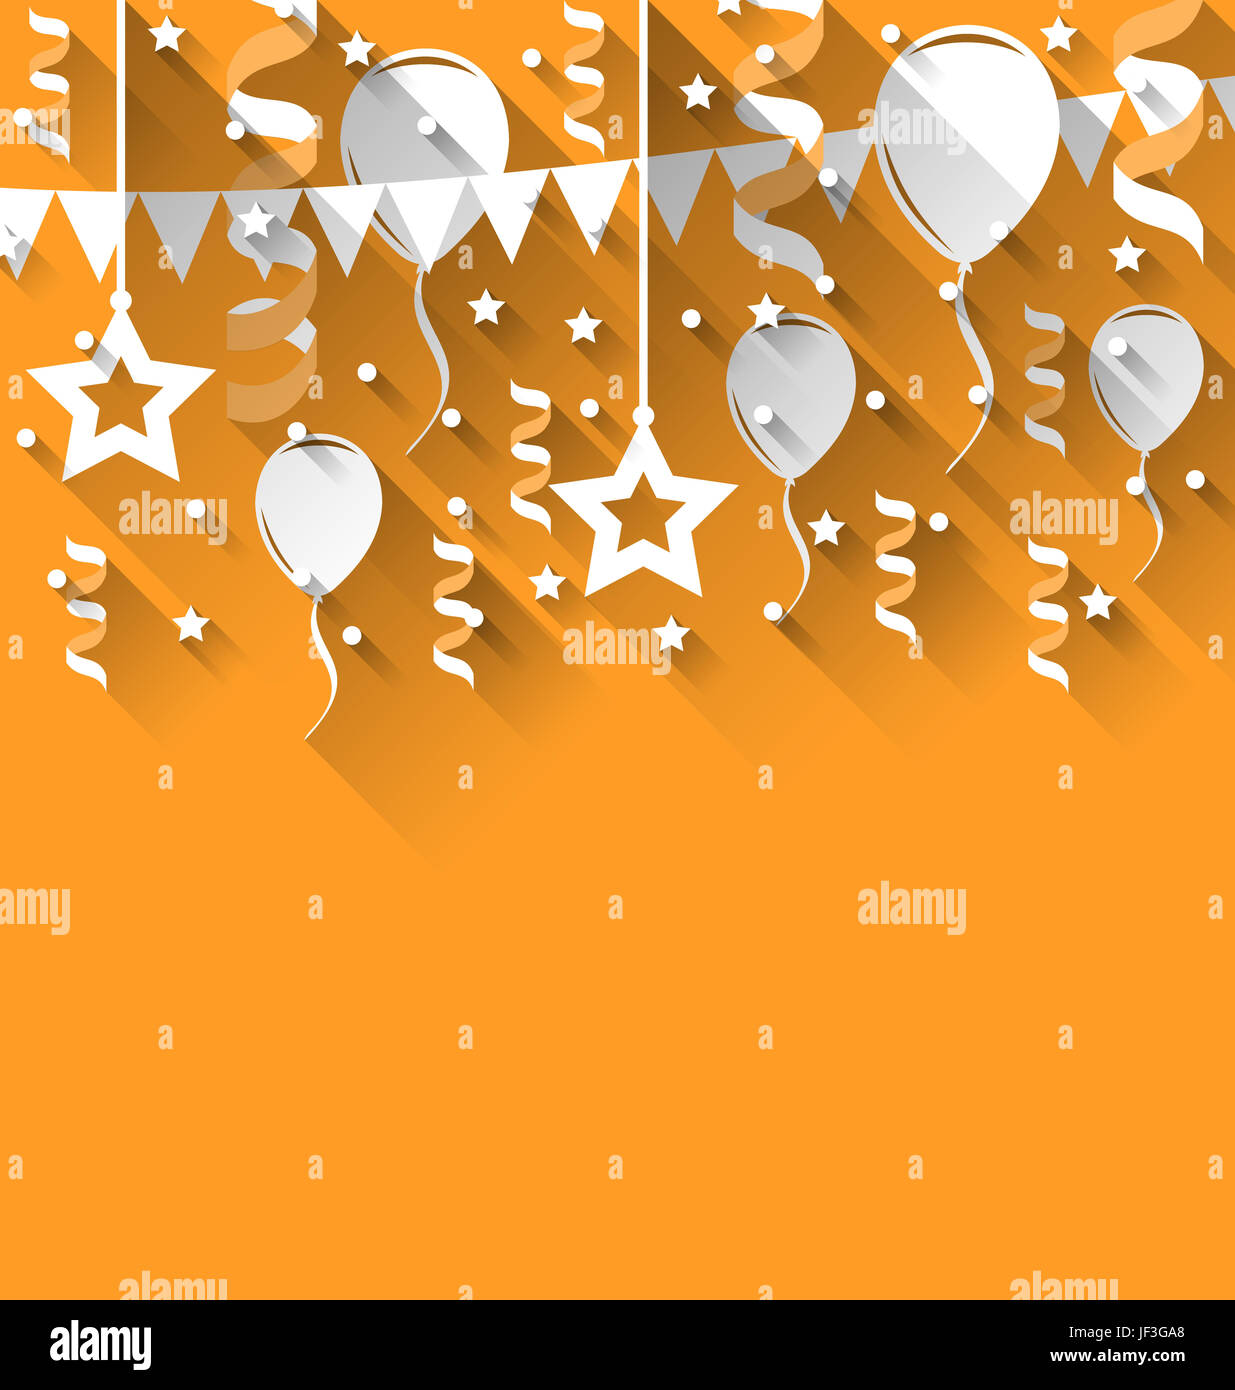 Ilustración de fondo feliz cumpleaños con globos, estrellas y banderines,  moderno estilo plano Fotografía de stock - Alamy